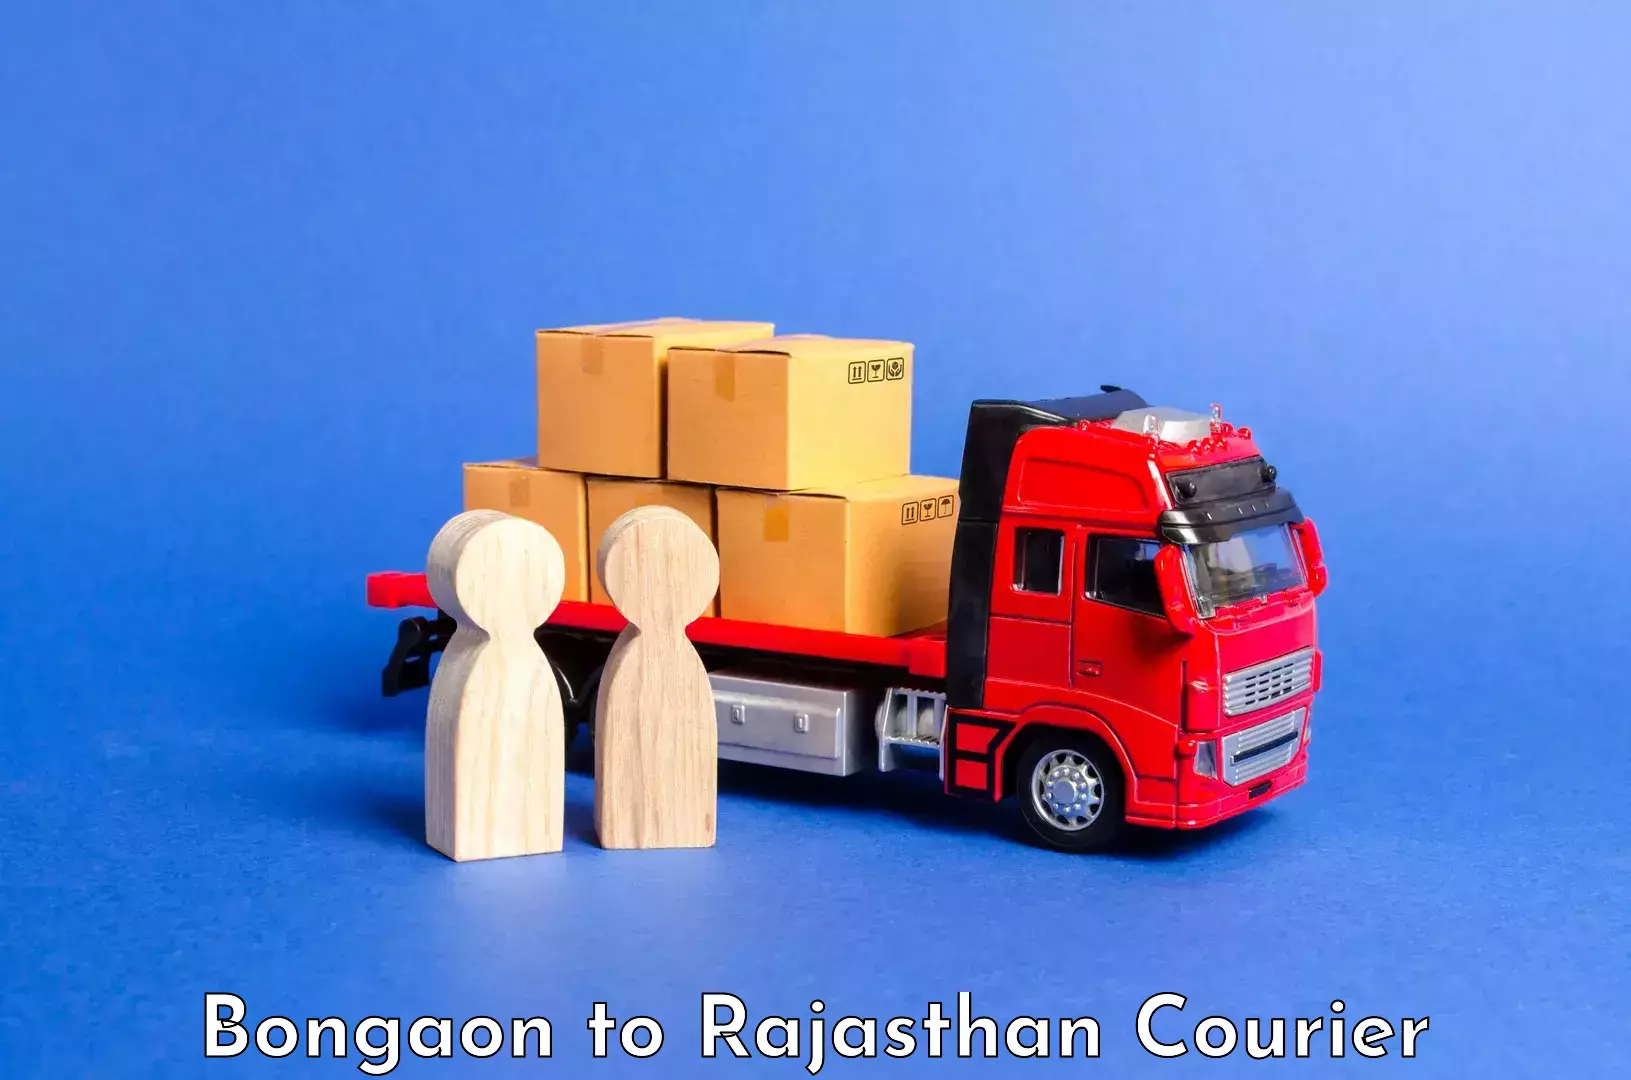 Luggage transport consultancy Bongaon to Lohawat